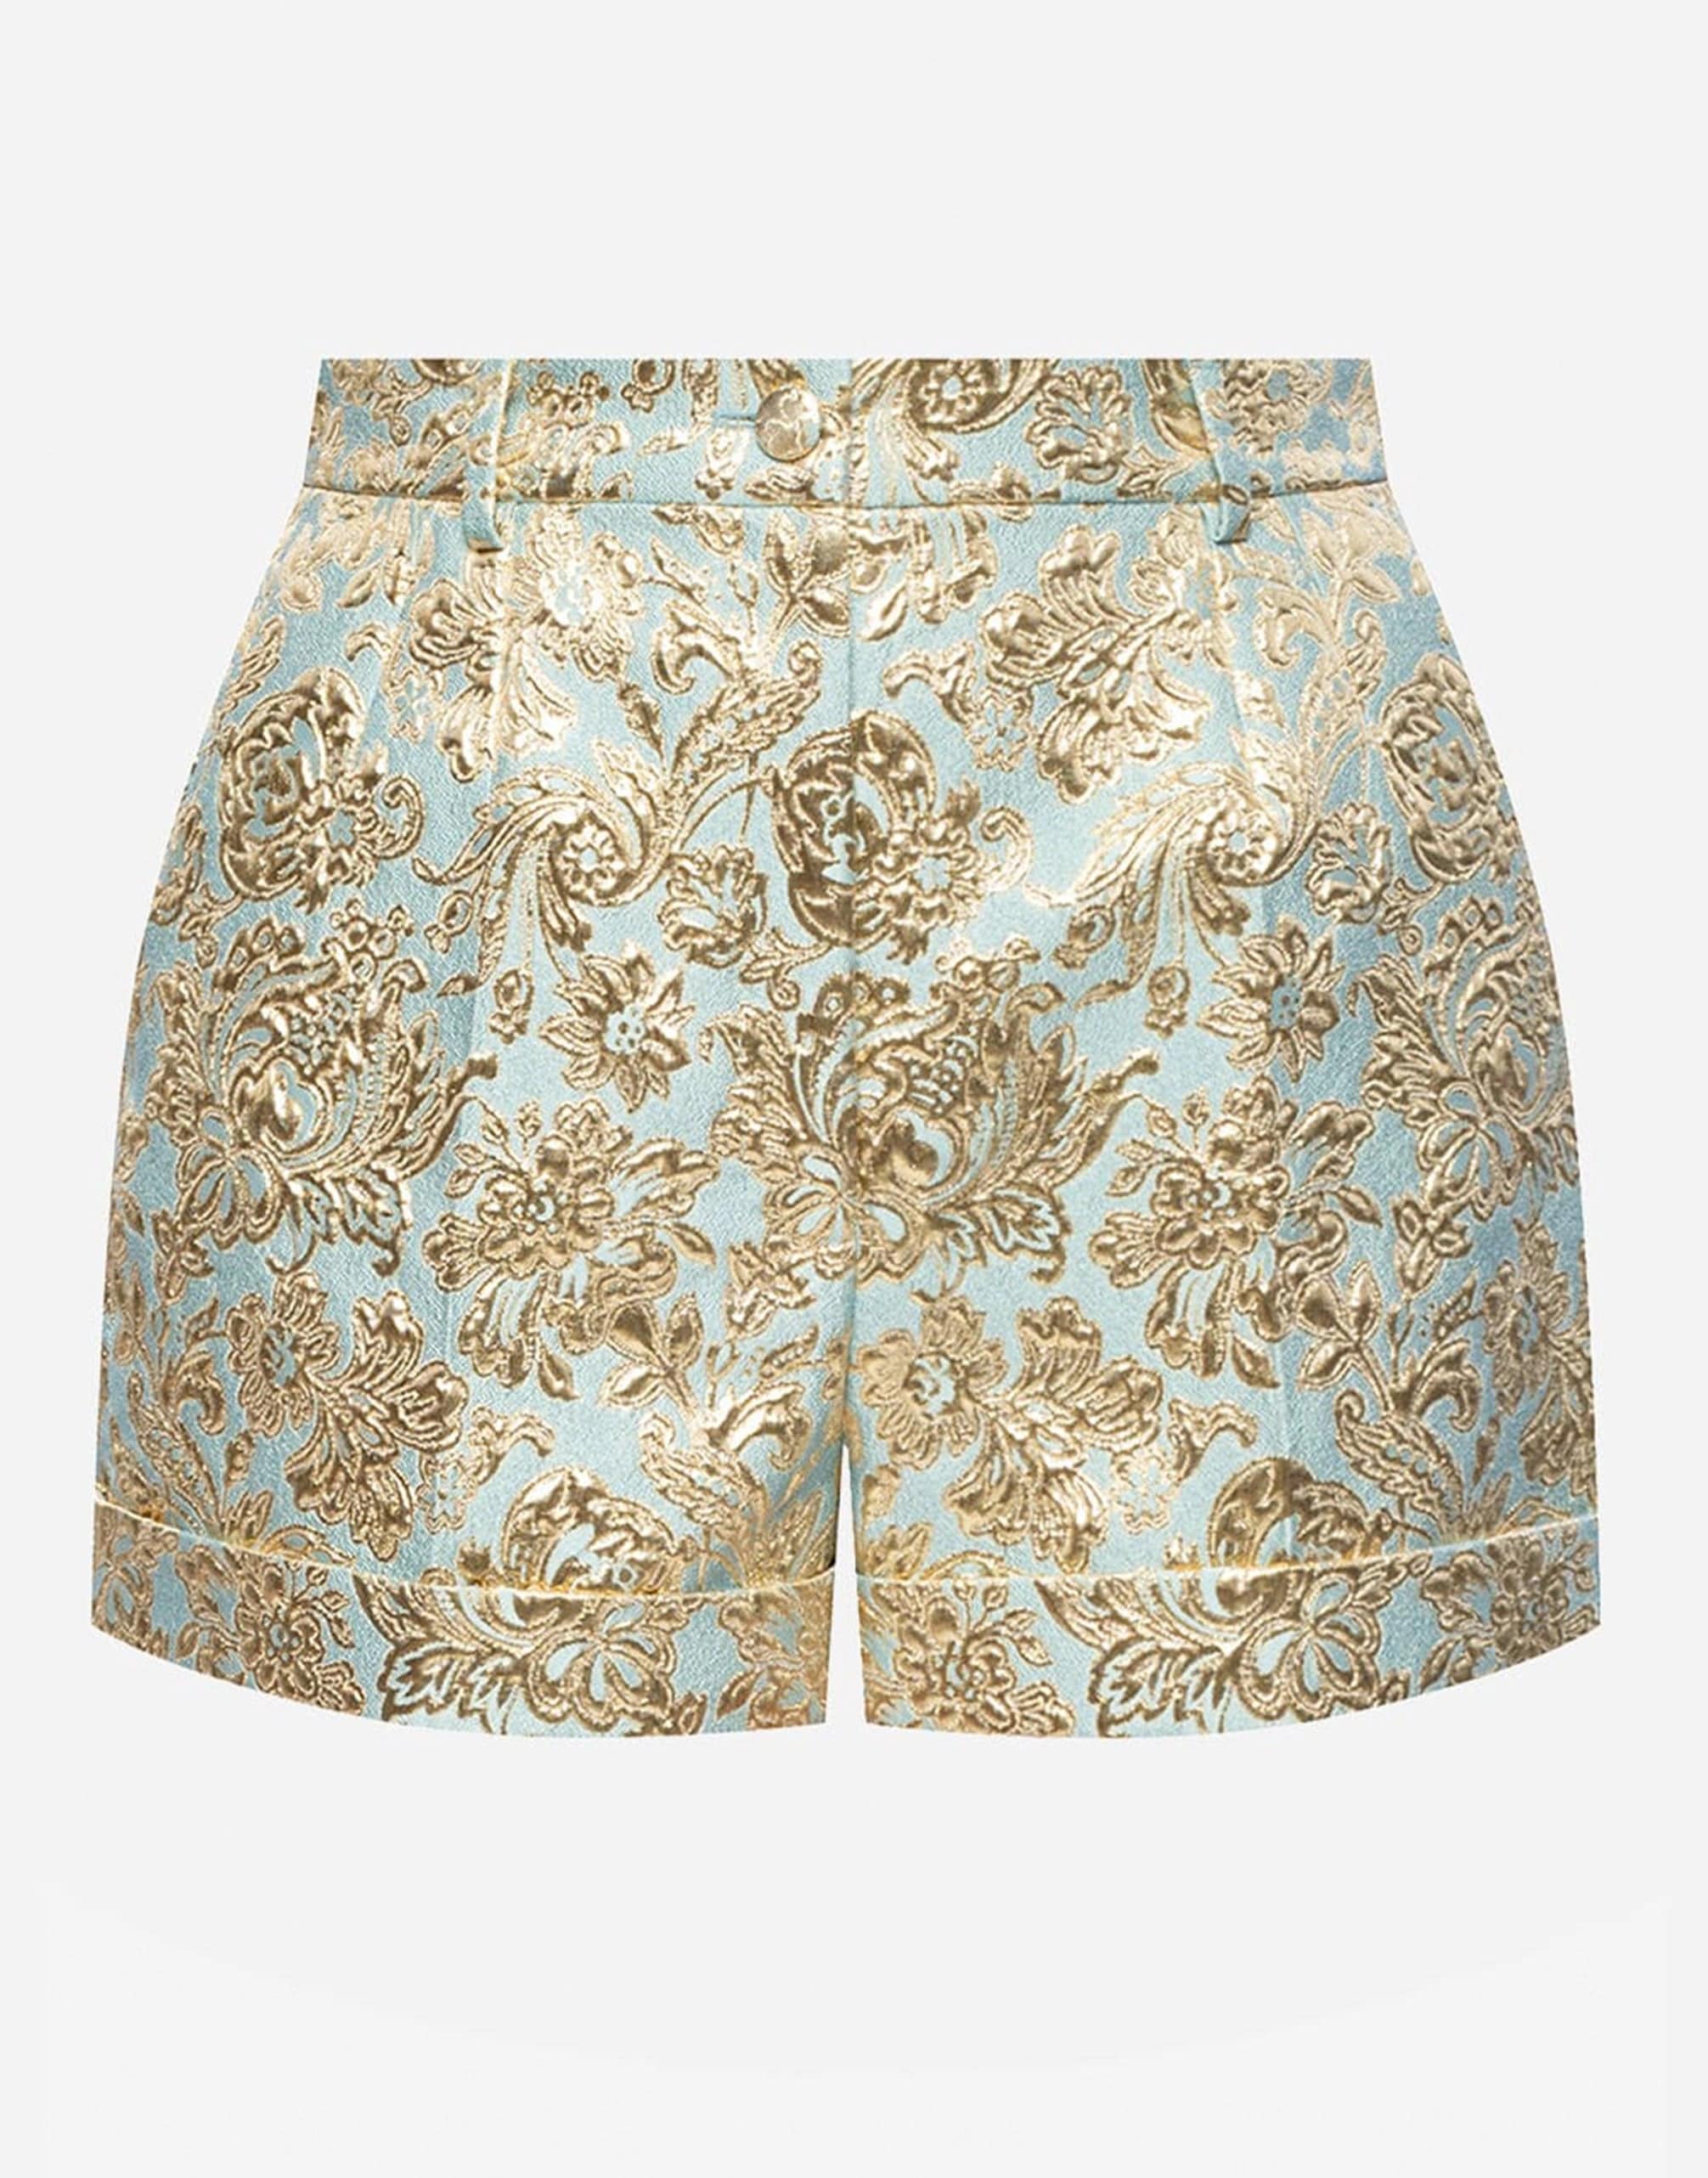 Dolce & Gabbana Jacquard Shantung Shorts